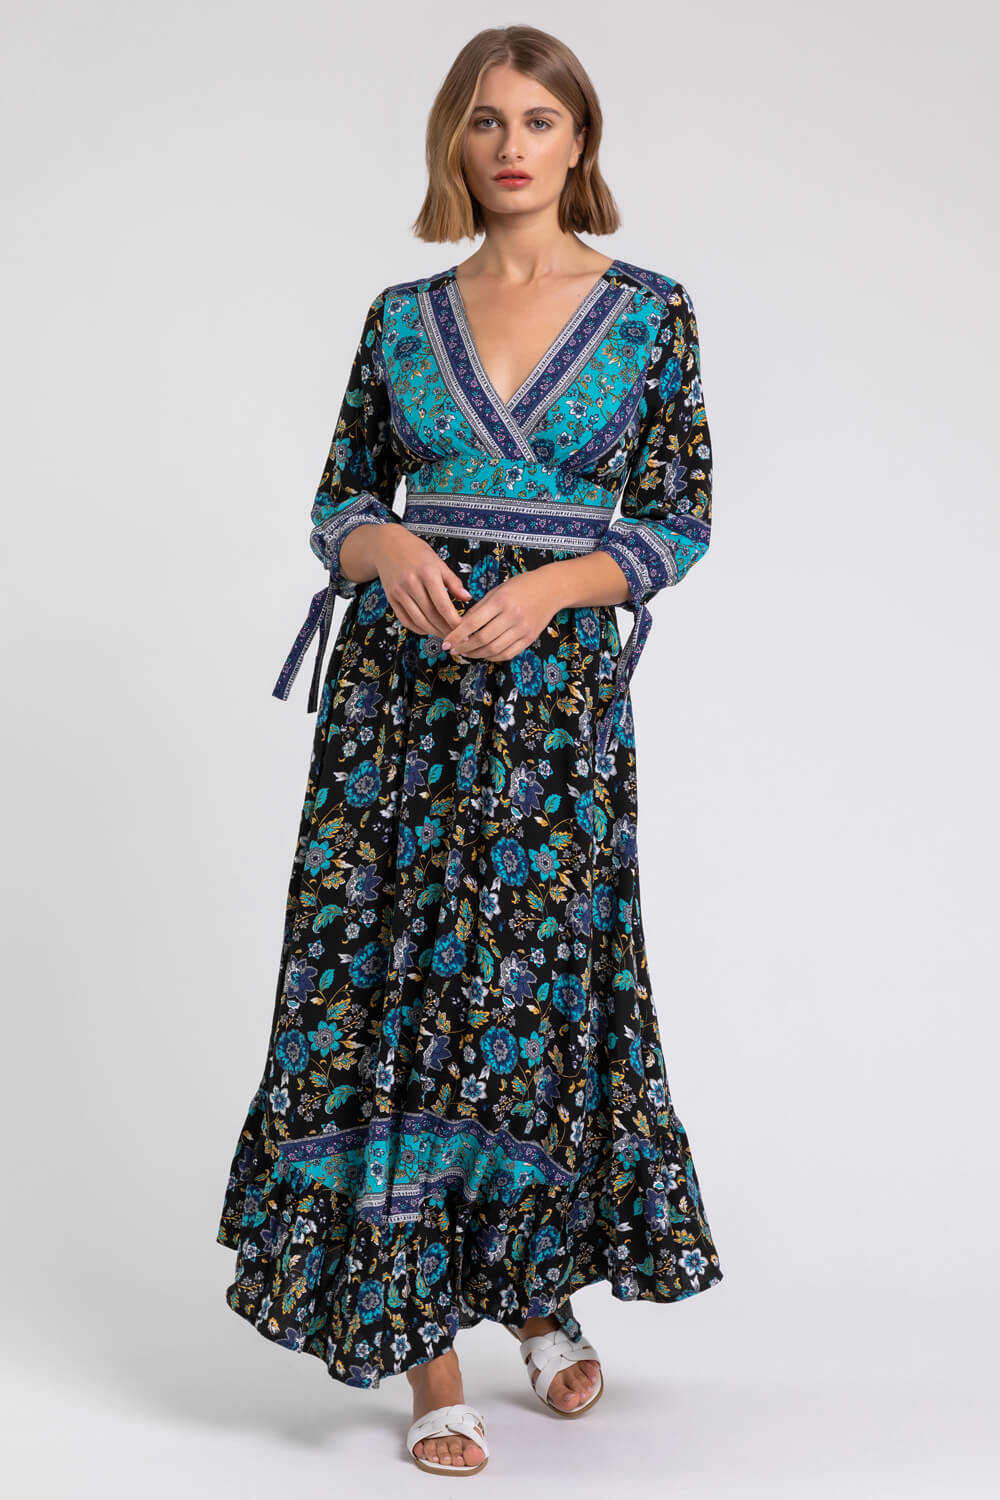 Floral Border Print Maxi Dress in Black - Roman Originals UK